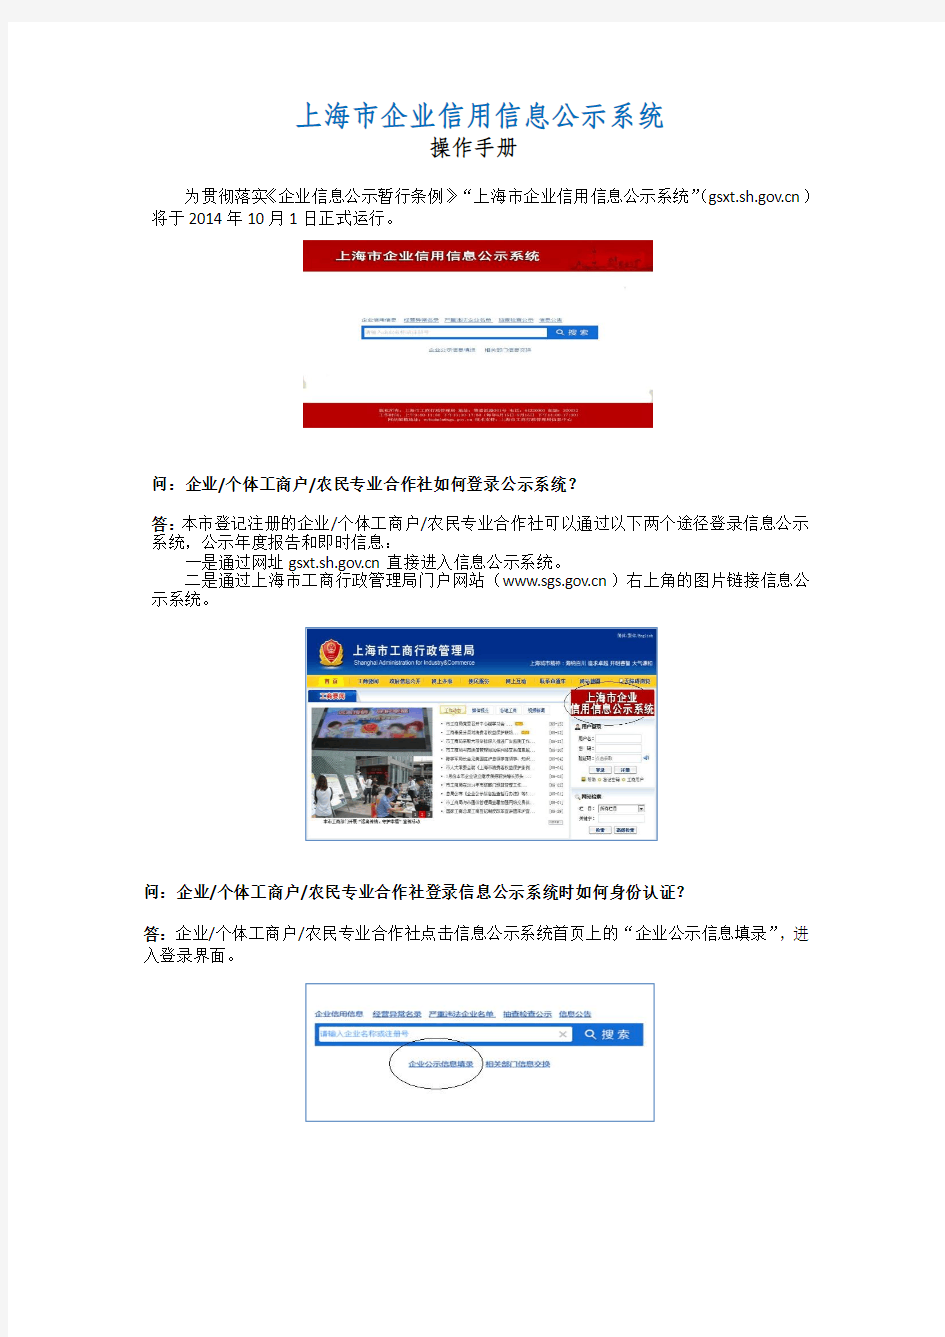 上海市企业信用信息公示系统操作手册